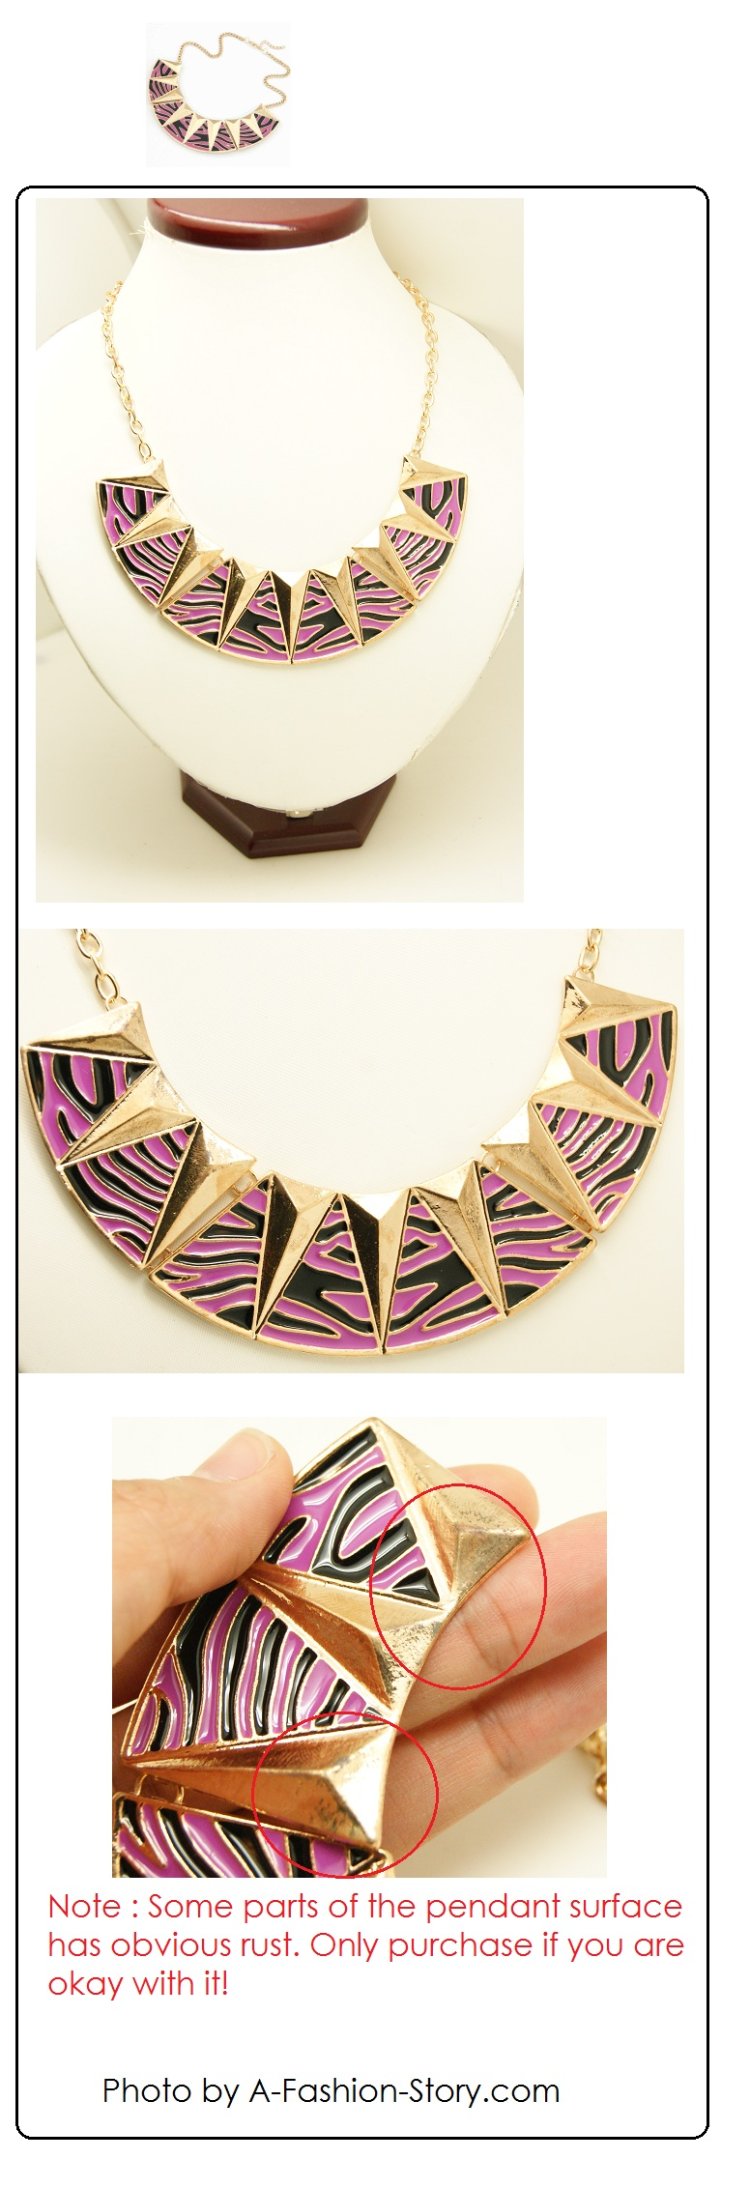 C11030158 Singapore choker necklace online shop blogshop wholesa